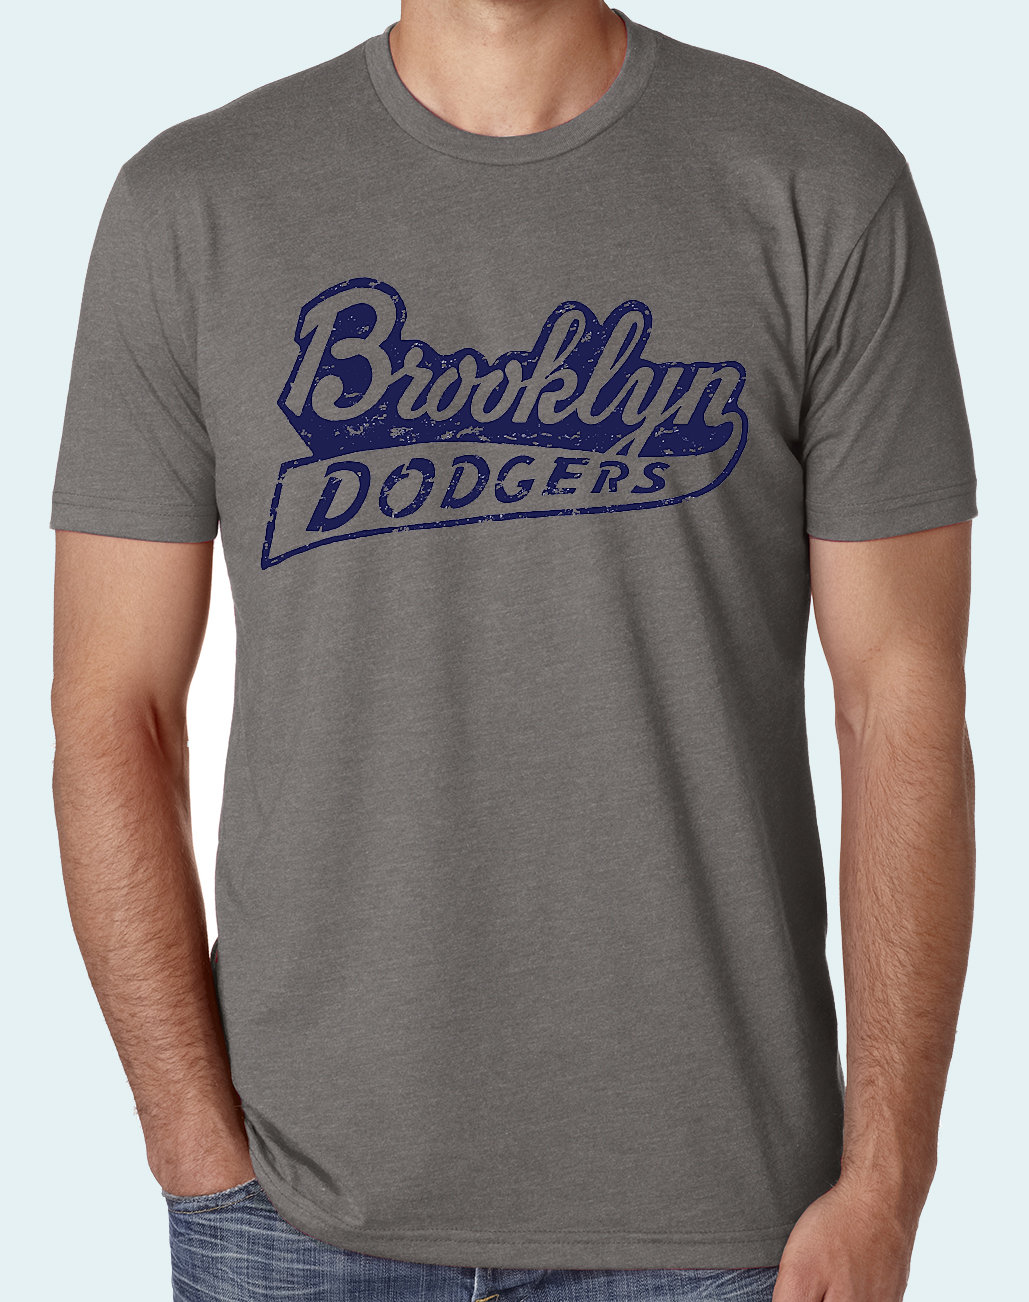 1947 brooklyn dodgers jersey